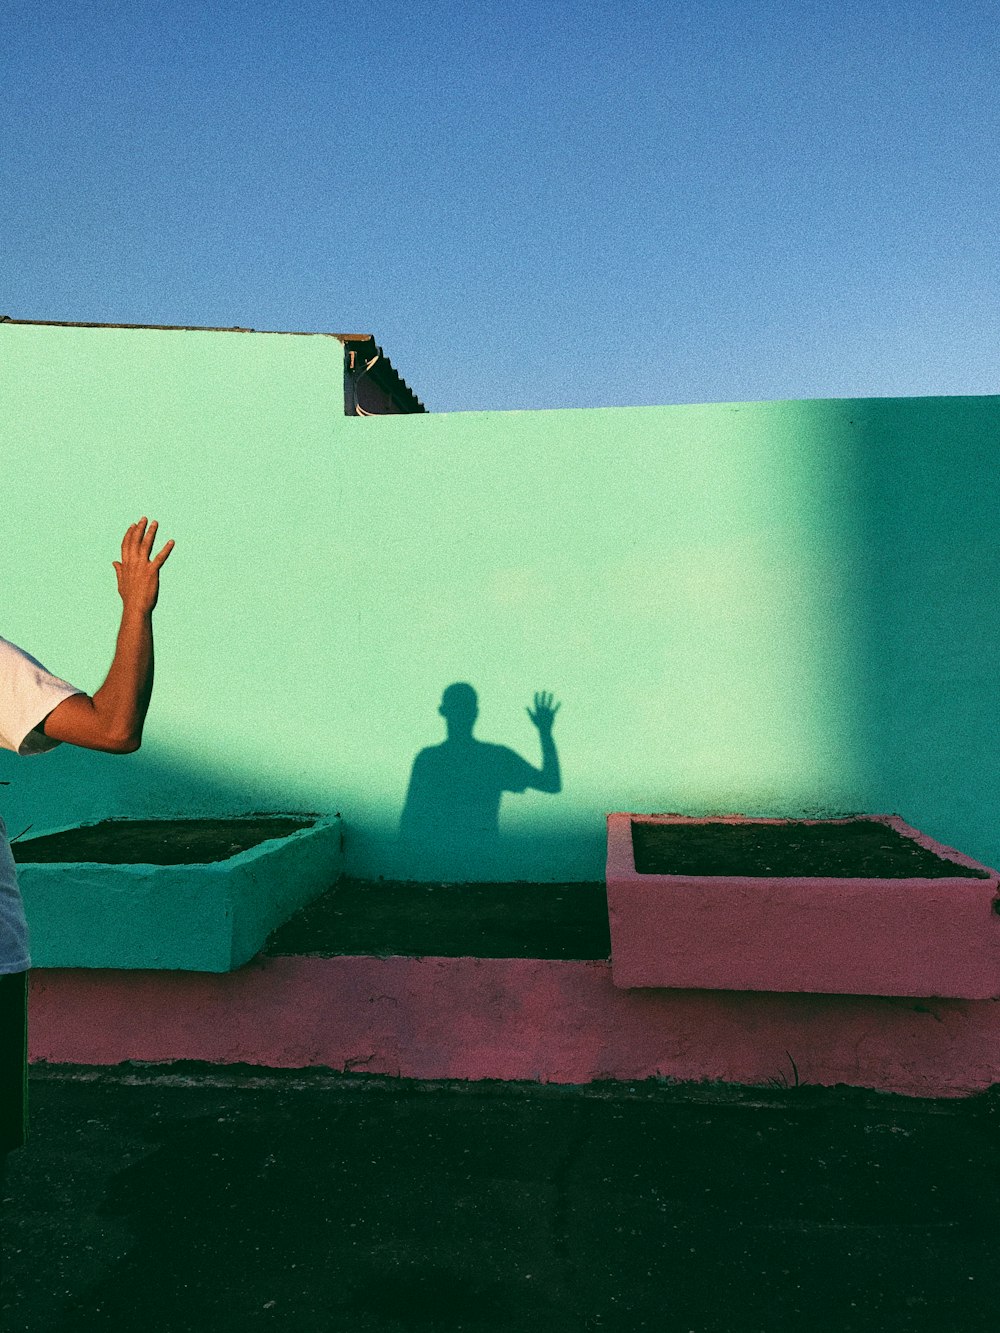 Persona agitando la sombra reflejando en la pintura de la pared verde azulado